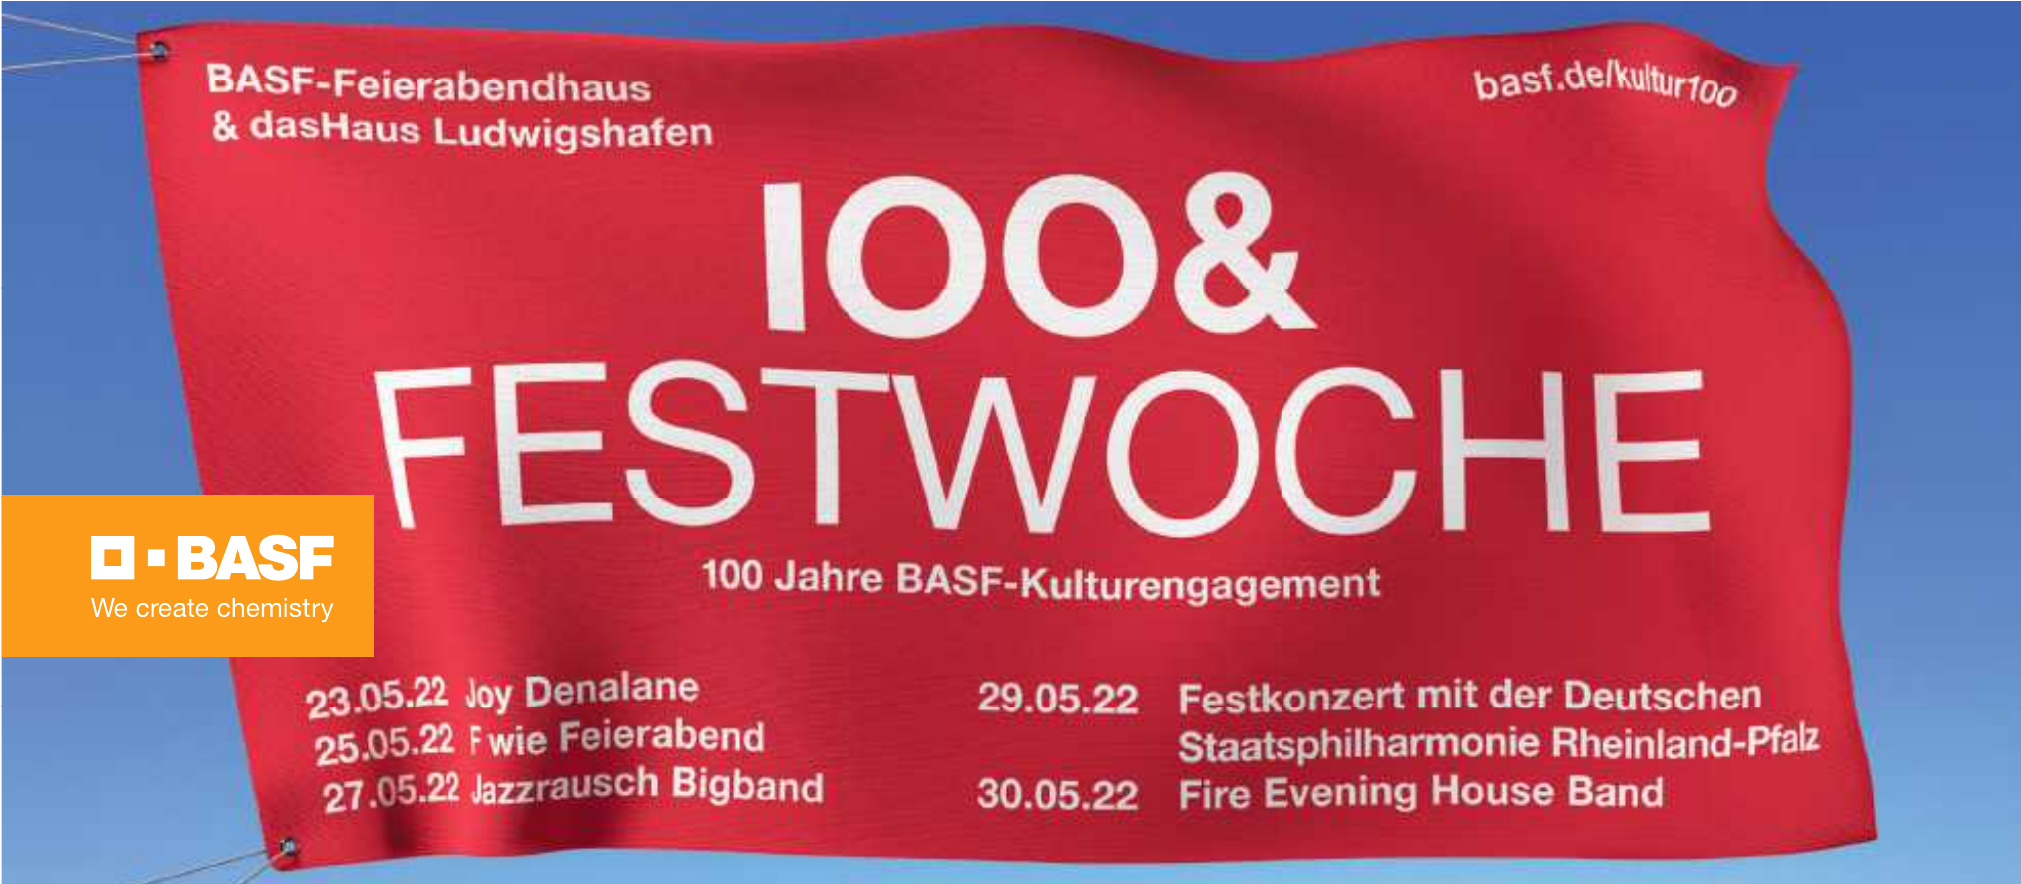 100 & Festwoche - 100 Jahre BASF-Kulturengagement